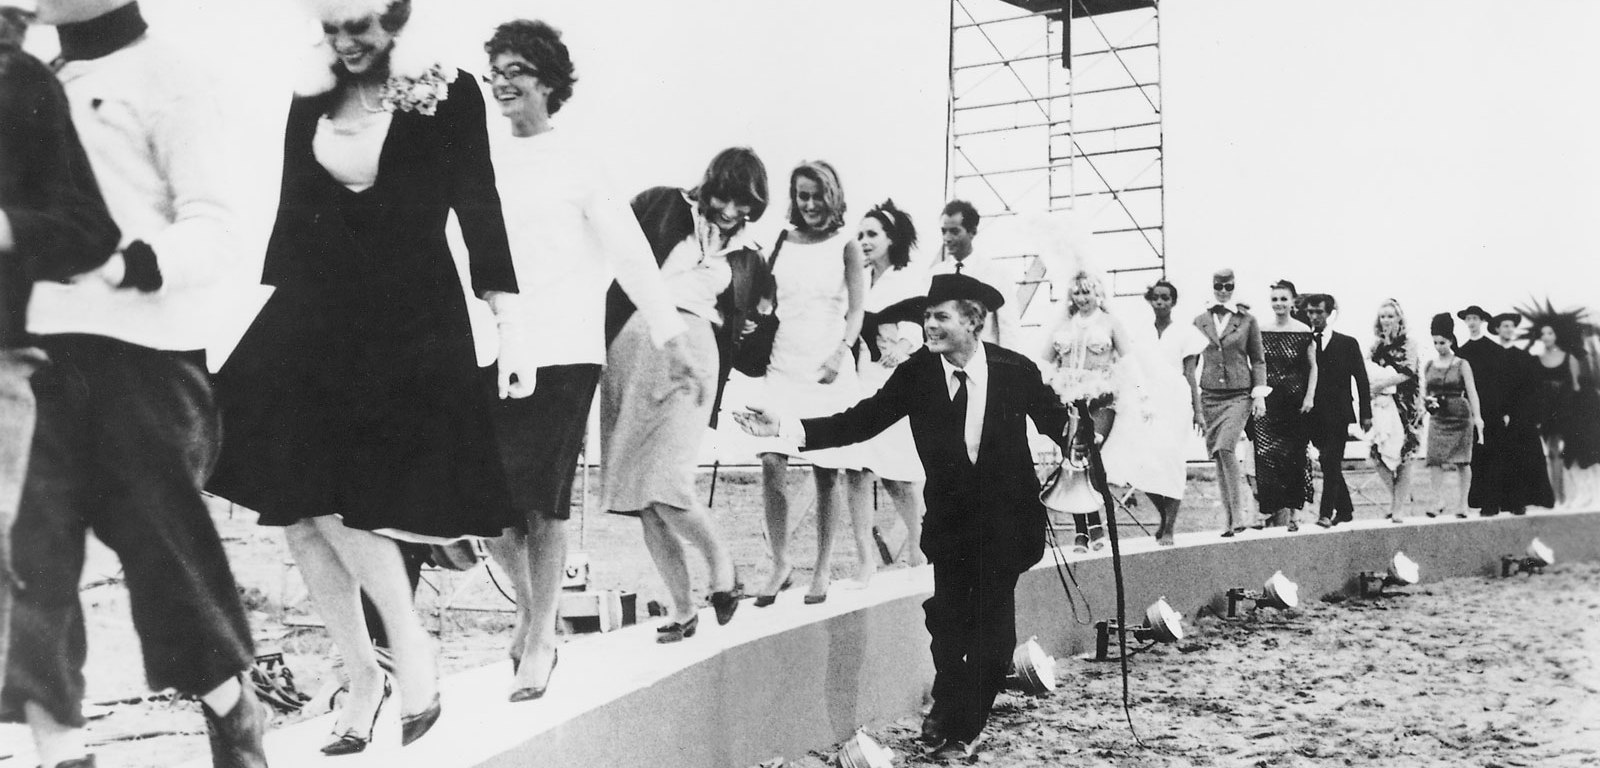 Buon compleanno Fellini!  L’Auditorium le Fornaci omaggia il maestro con la proiezione di “8 ½”